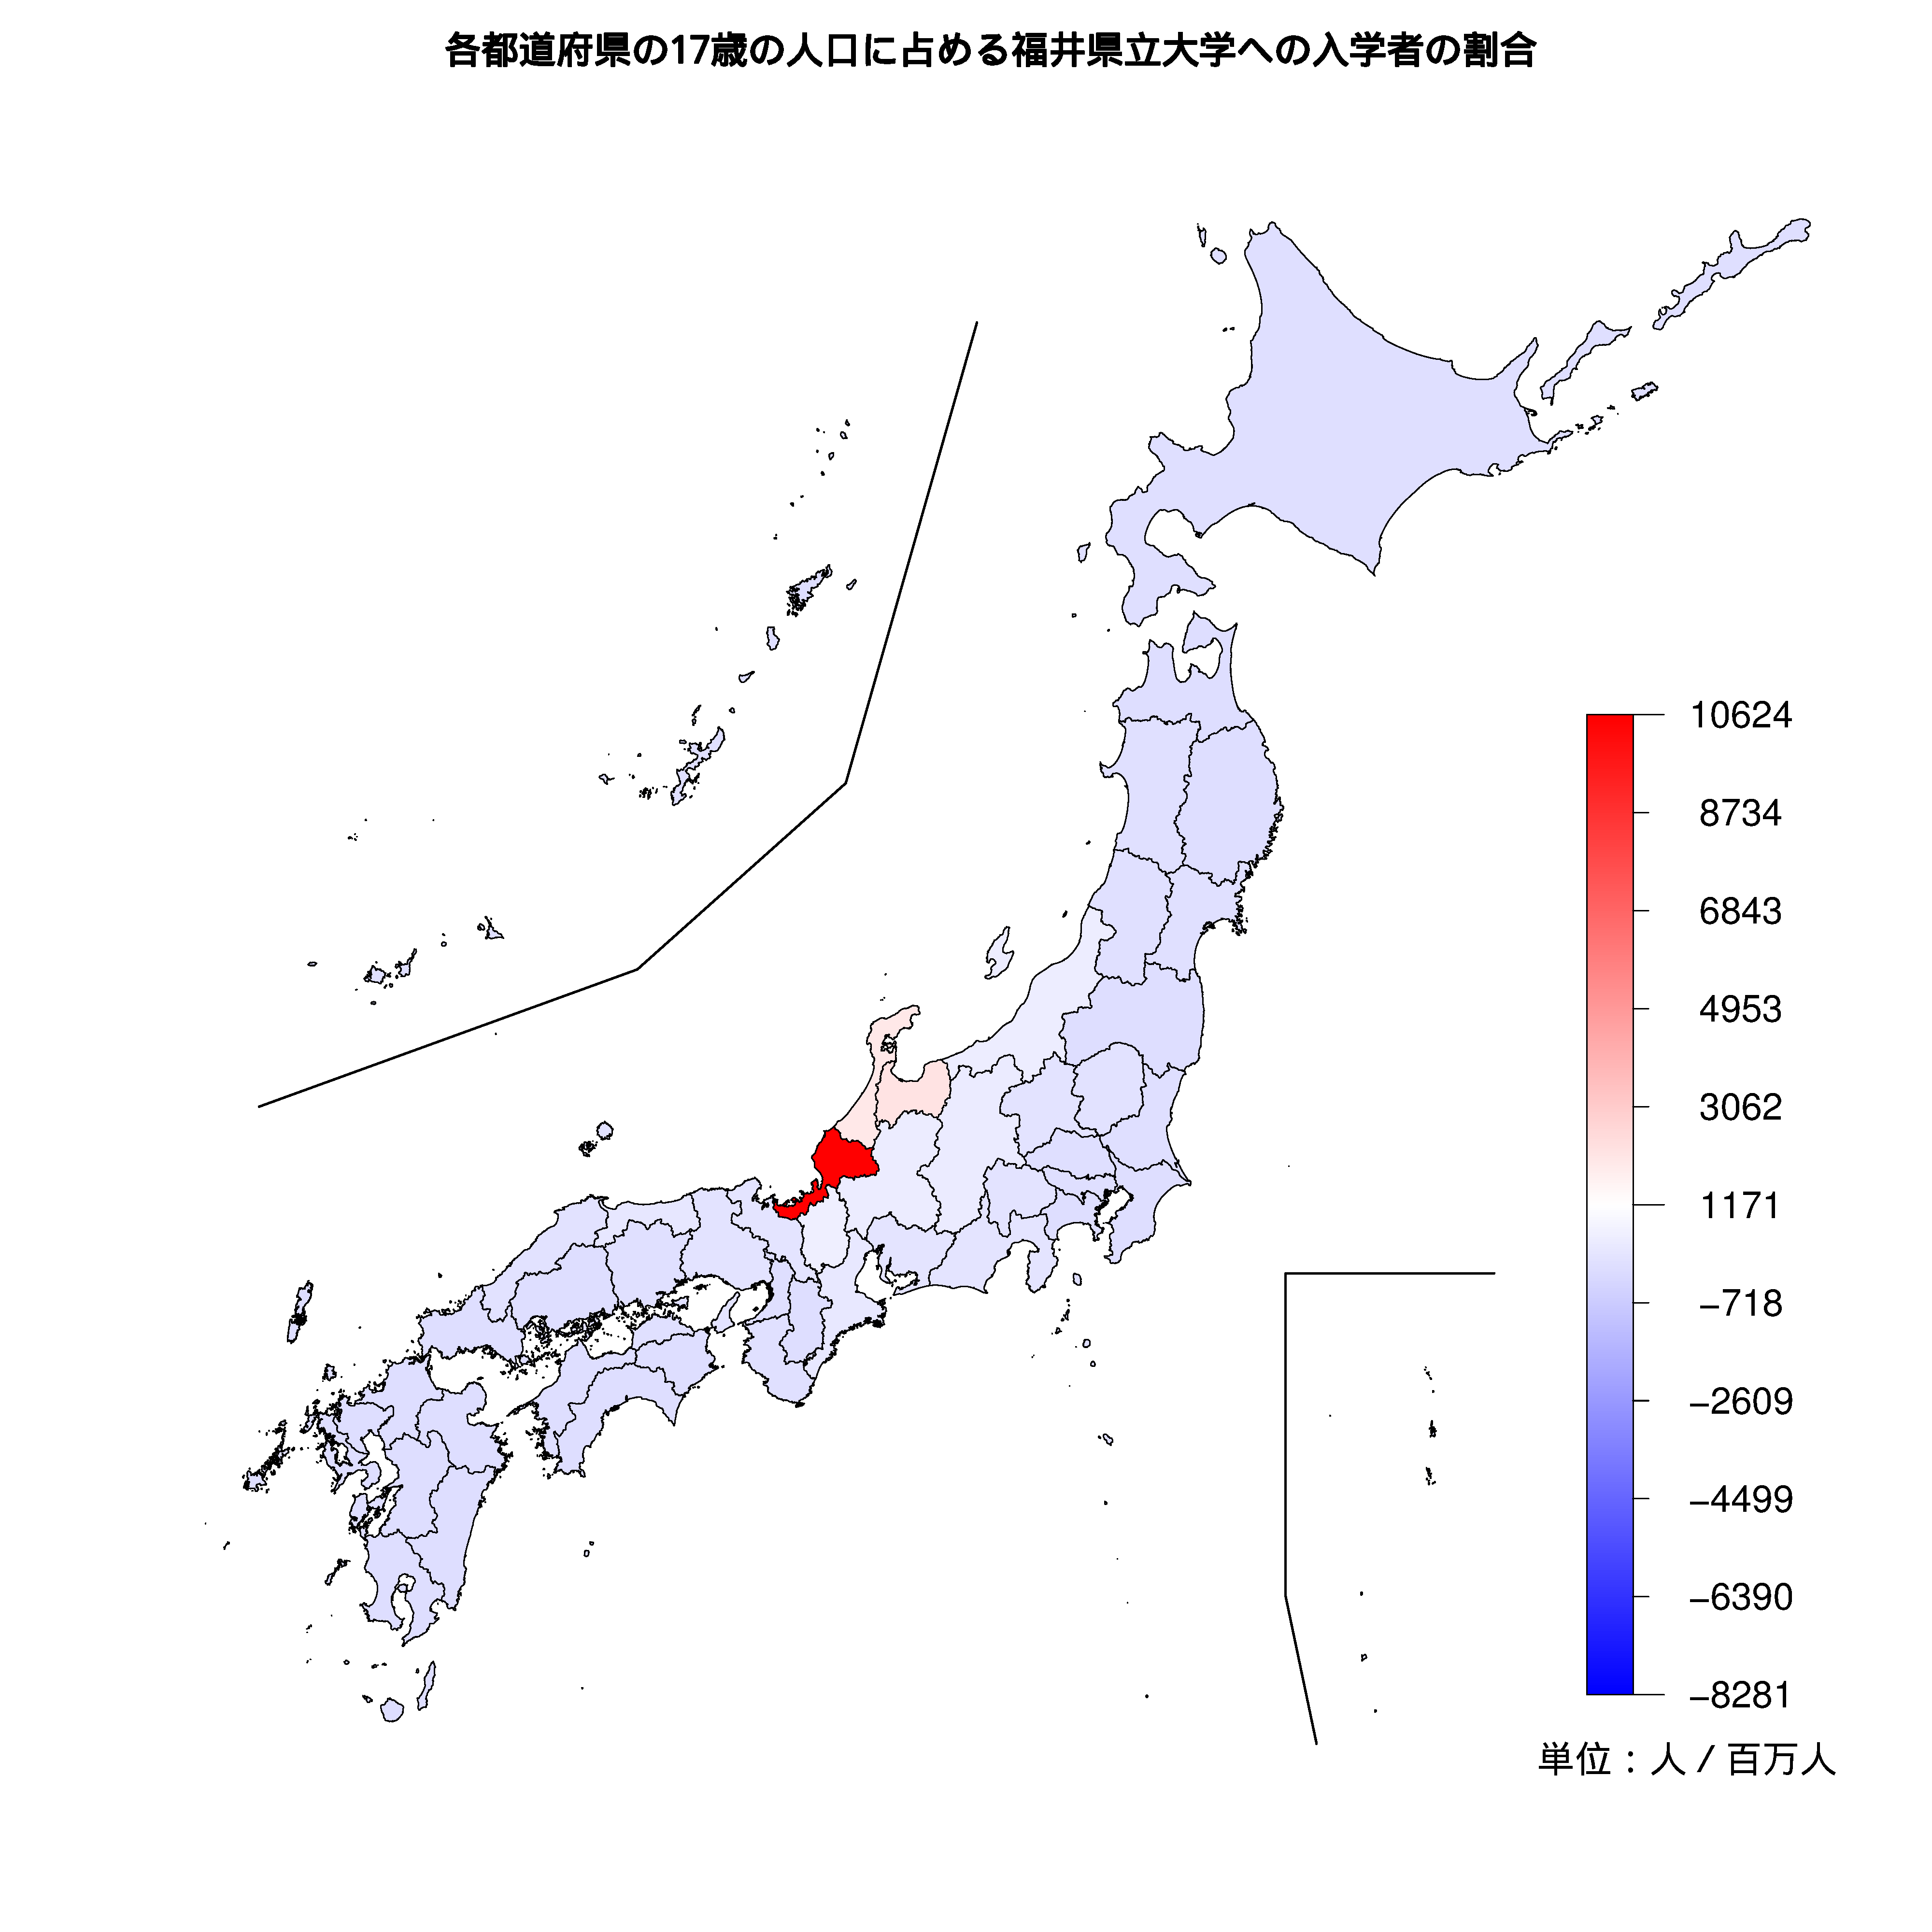 福井県立大学への入学者が多い都道府県の色分け地図